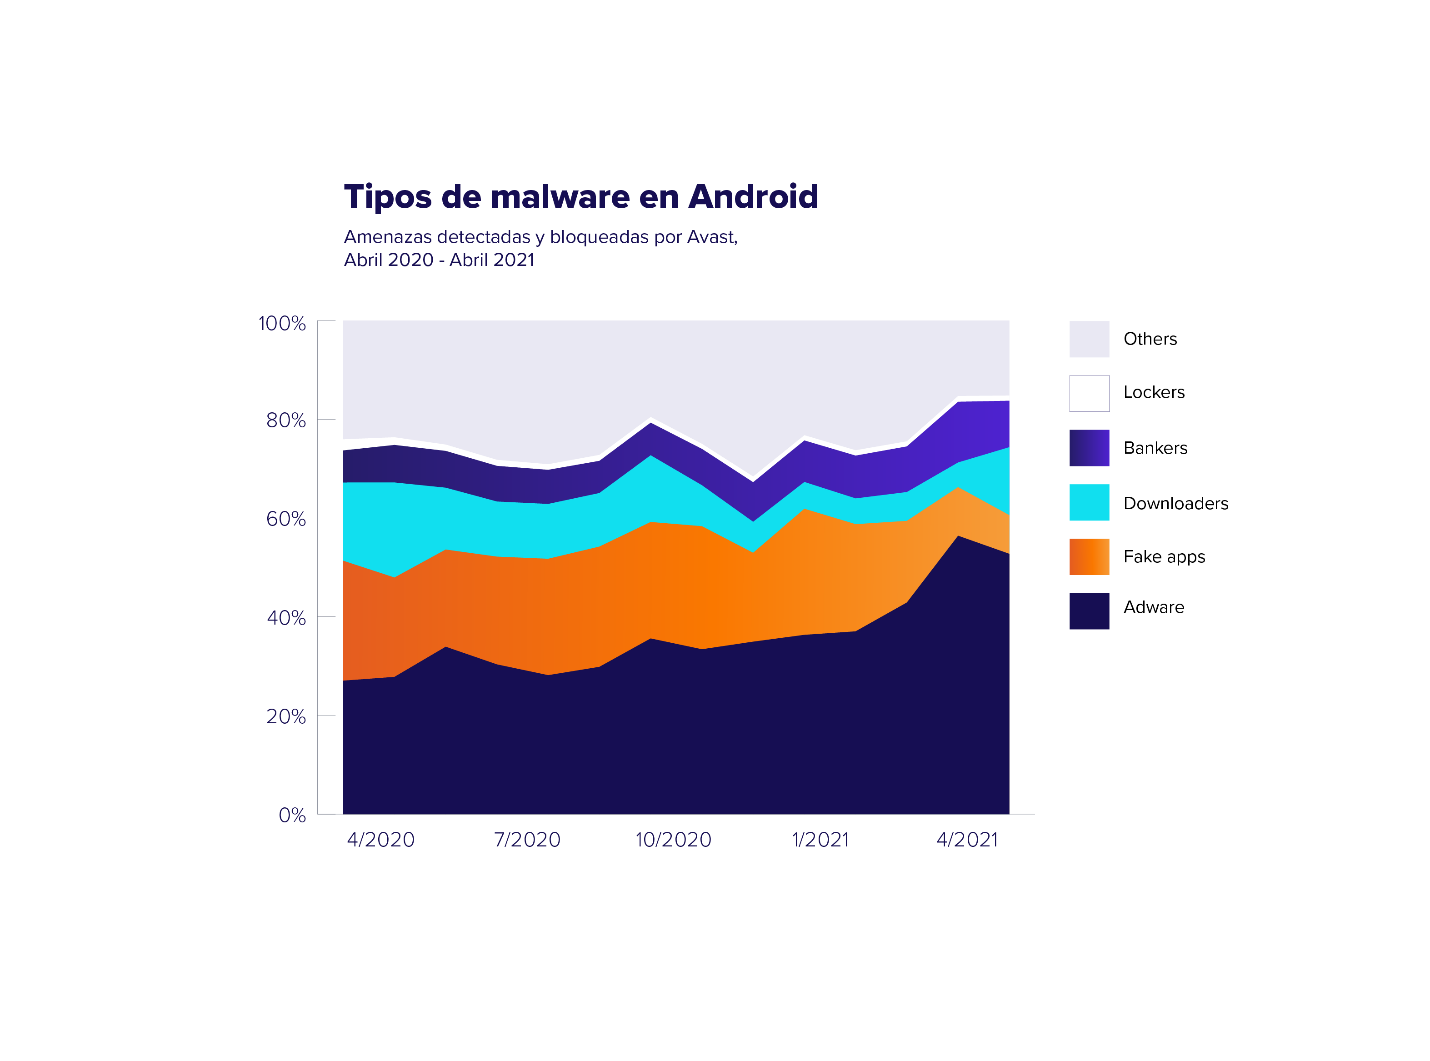 Avast informa de que el adware sigue reinando entre las amenazas de Android